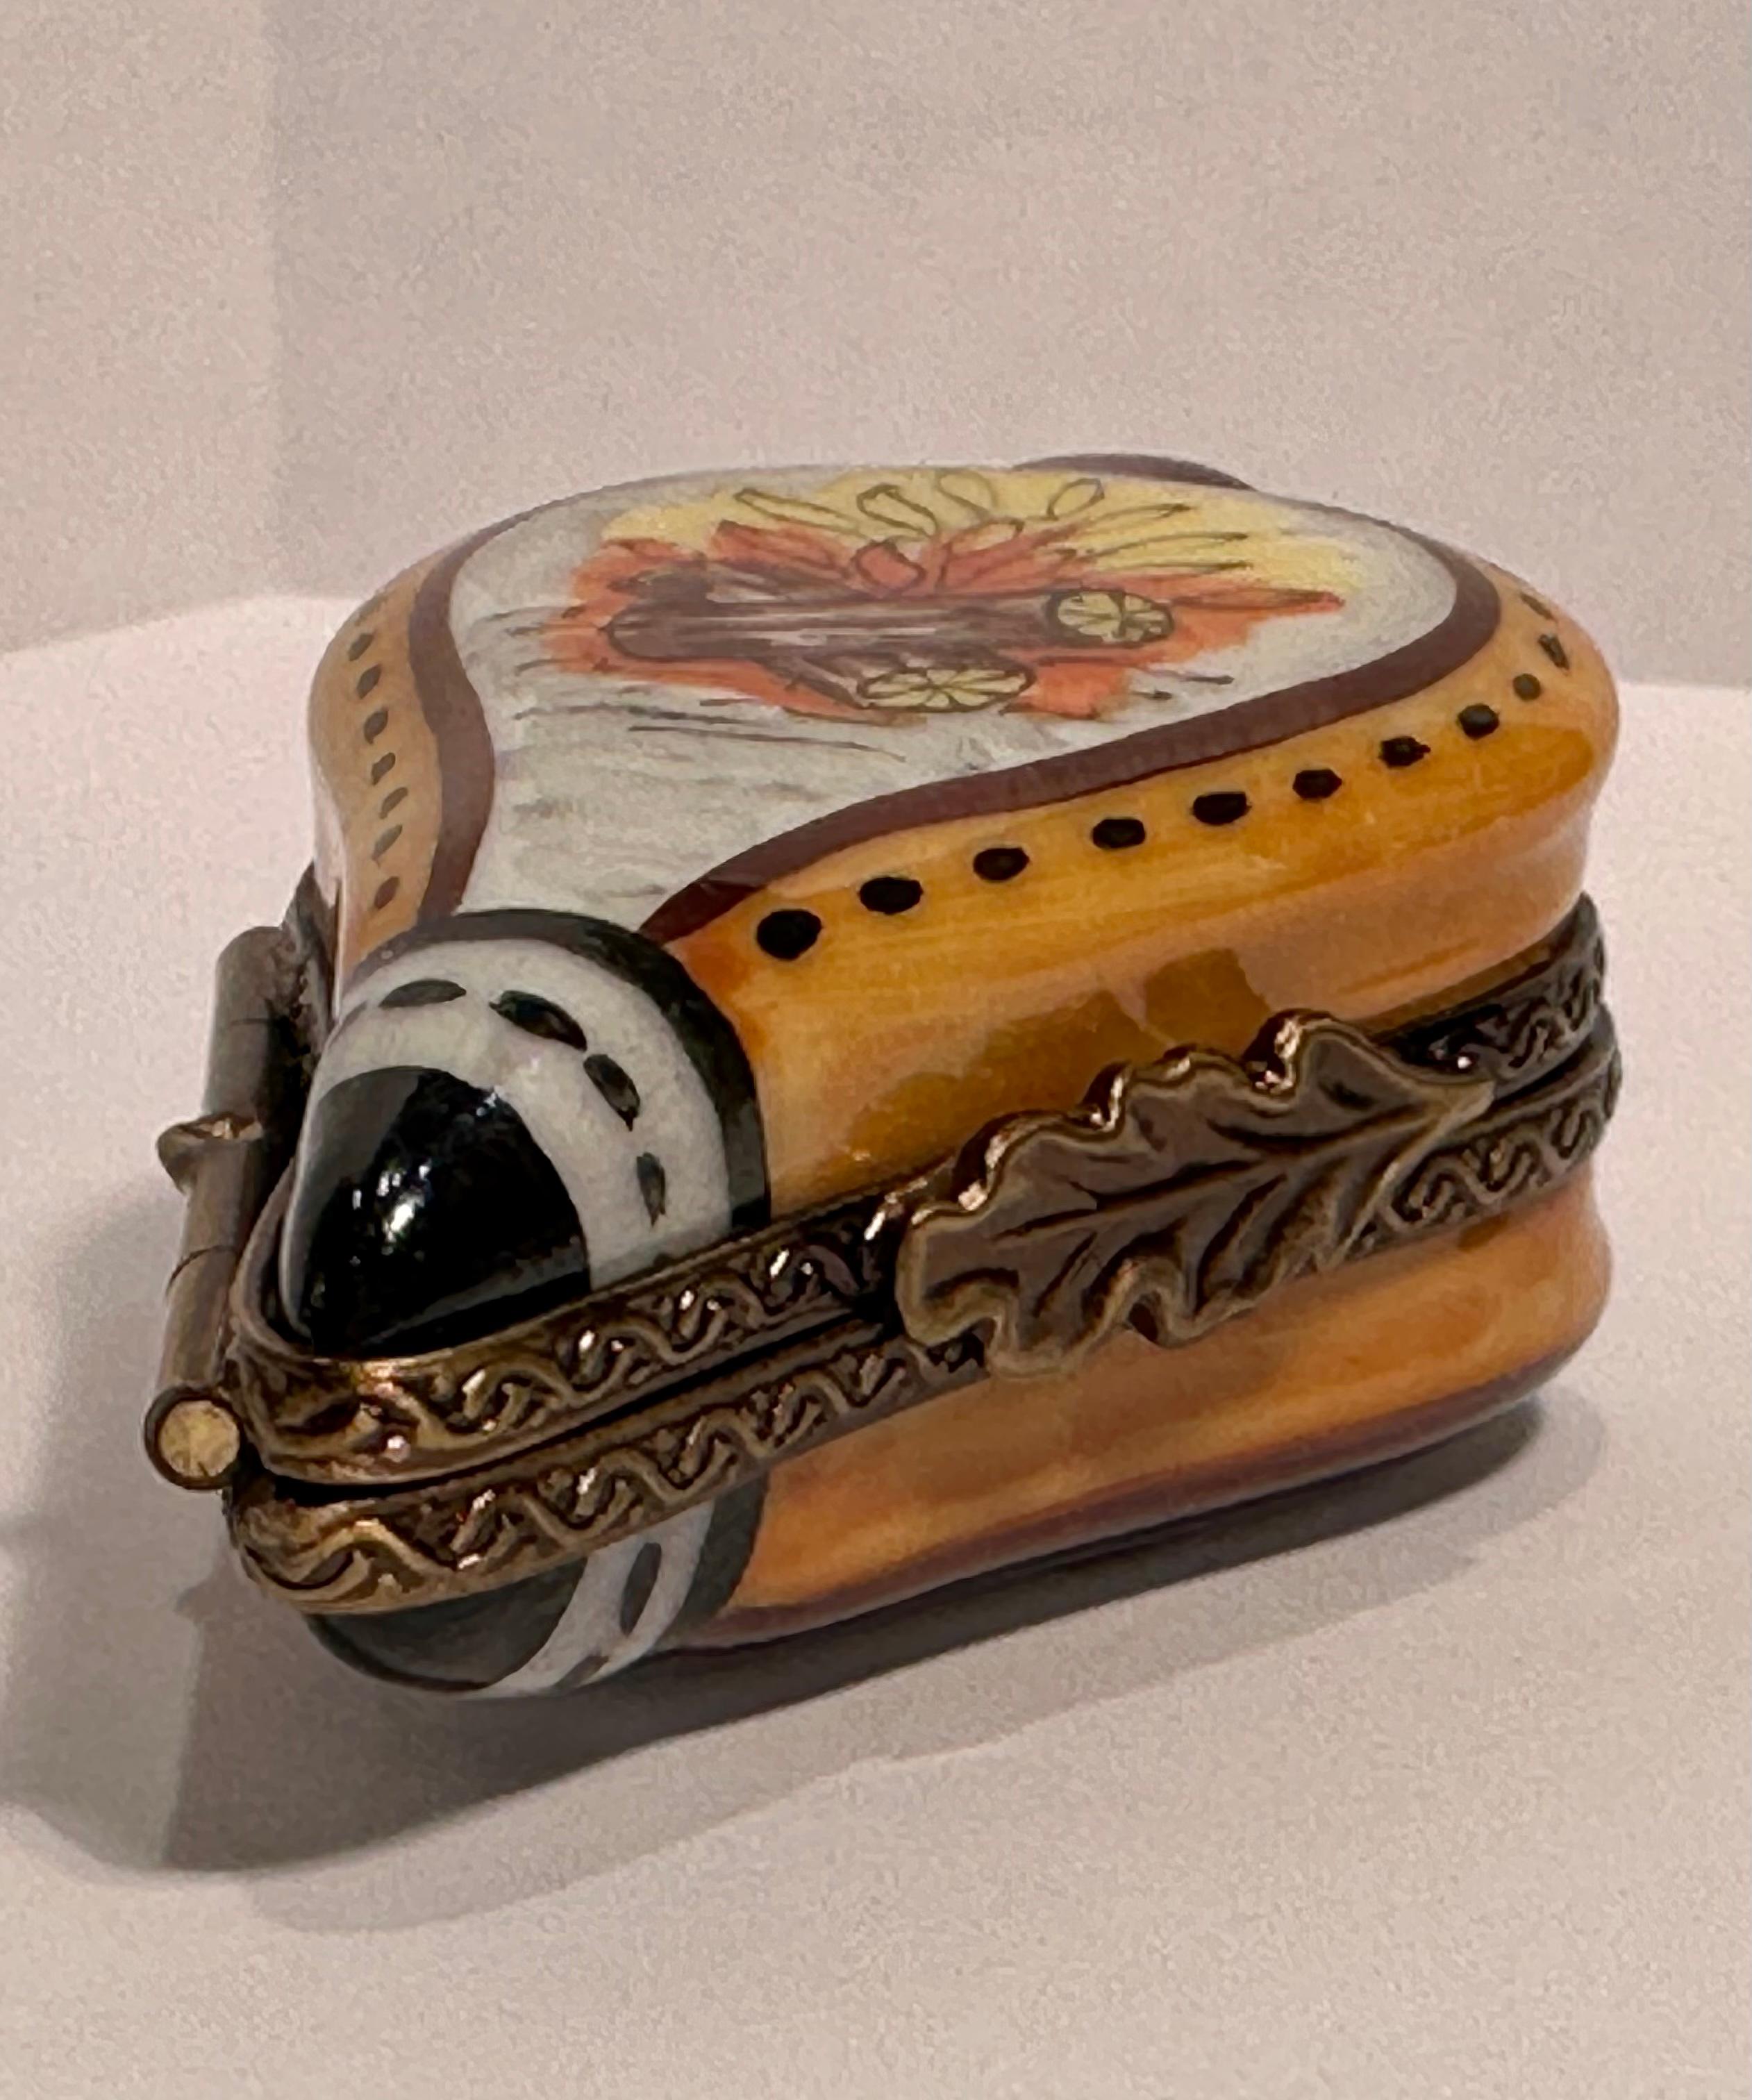 Collectional et très unique, la boîte à bibelots miniature en porcelaine de Limoges est fabriquée et peinte à la main en France. Elle présente un soufflet très détaillé avec une scène de bûches en feu peinte à la main sur une face et une scène de